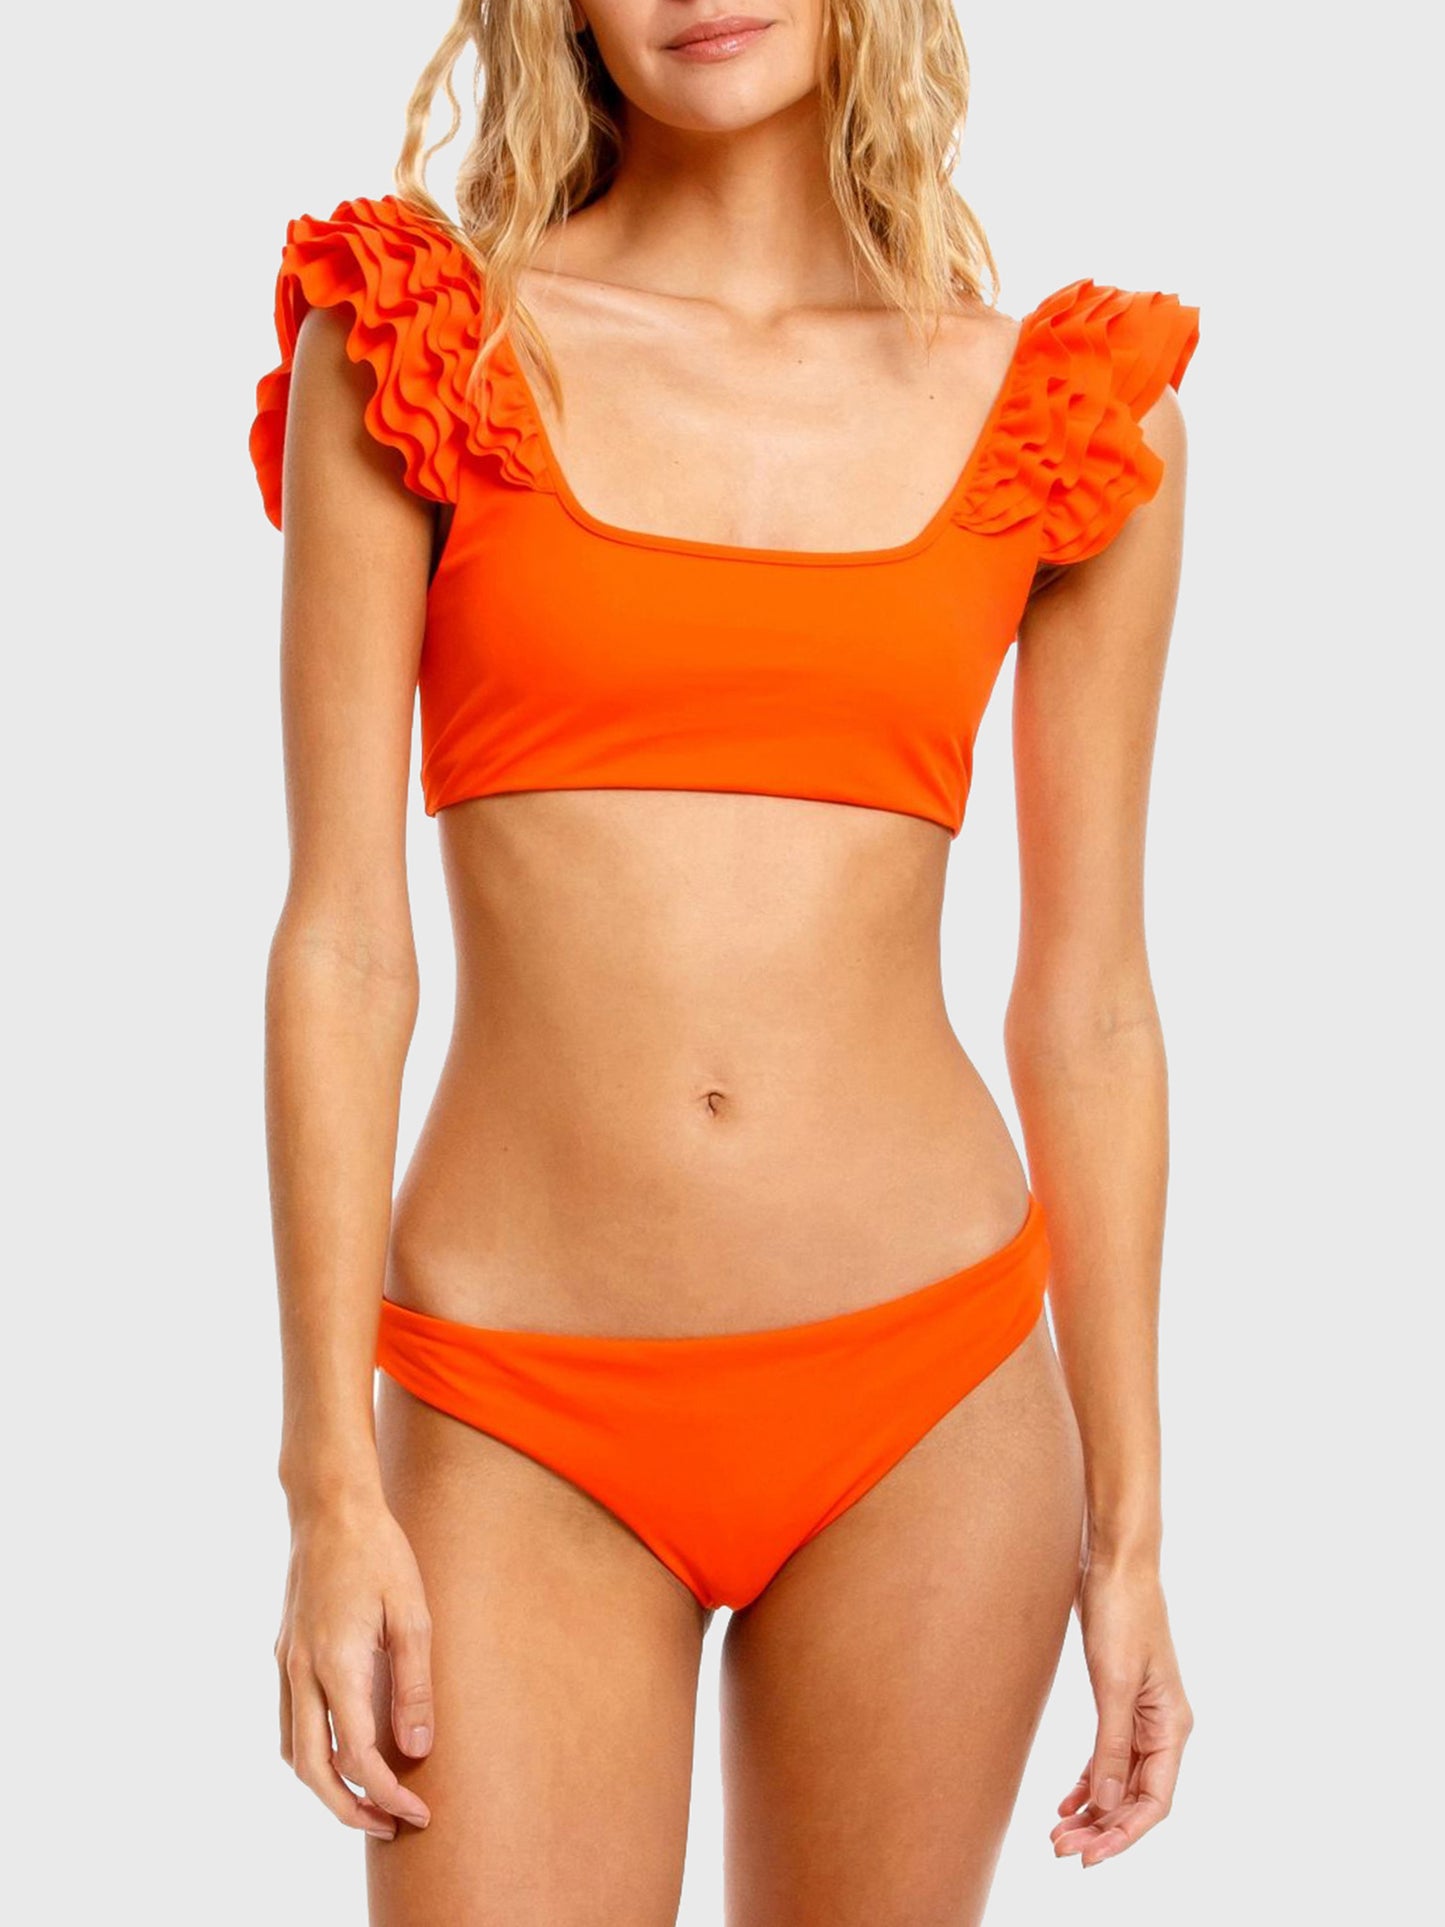 Agua Bendita Women's Arielle Sunbaze Bikini Top